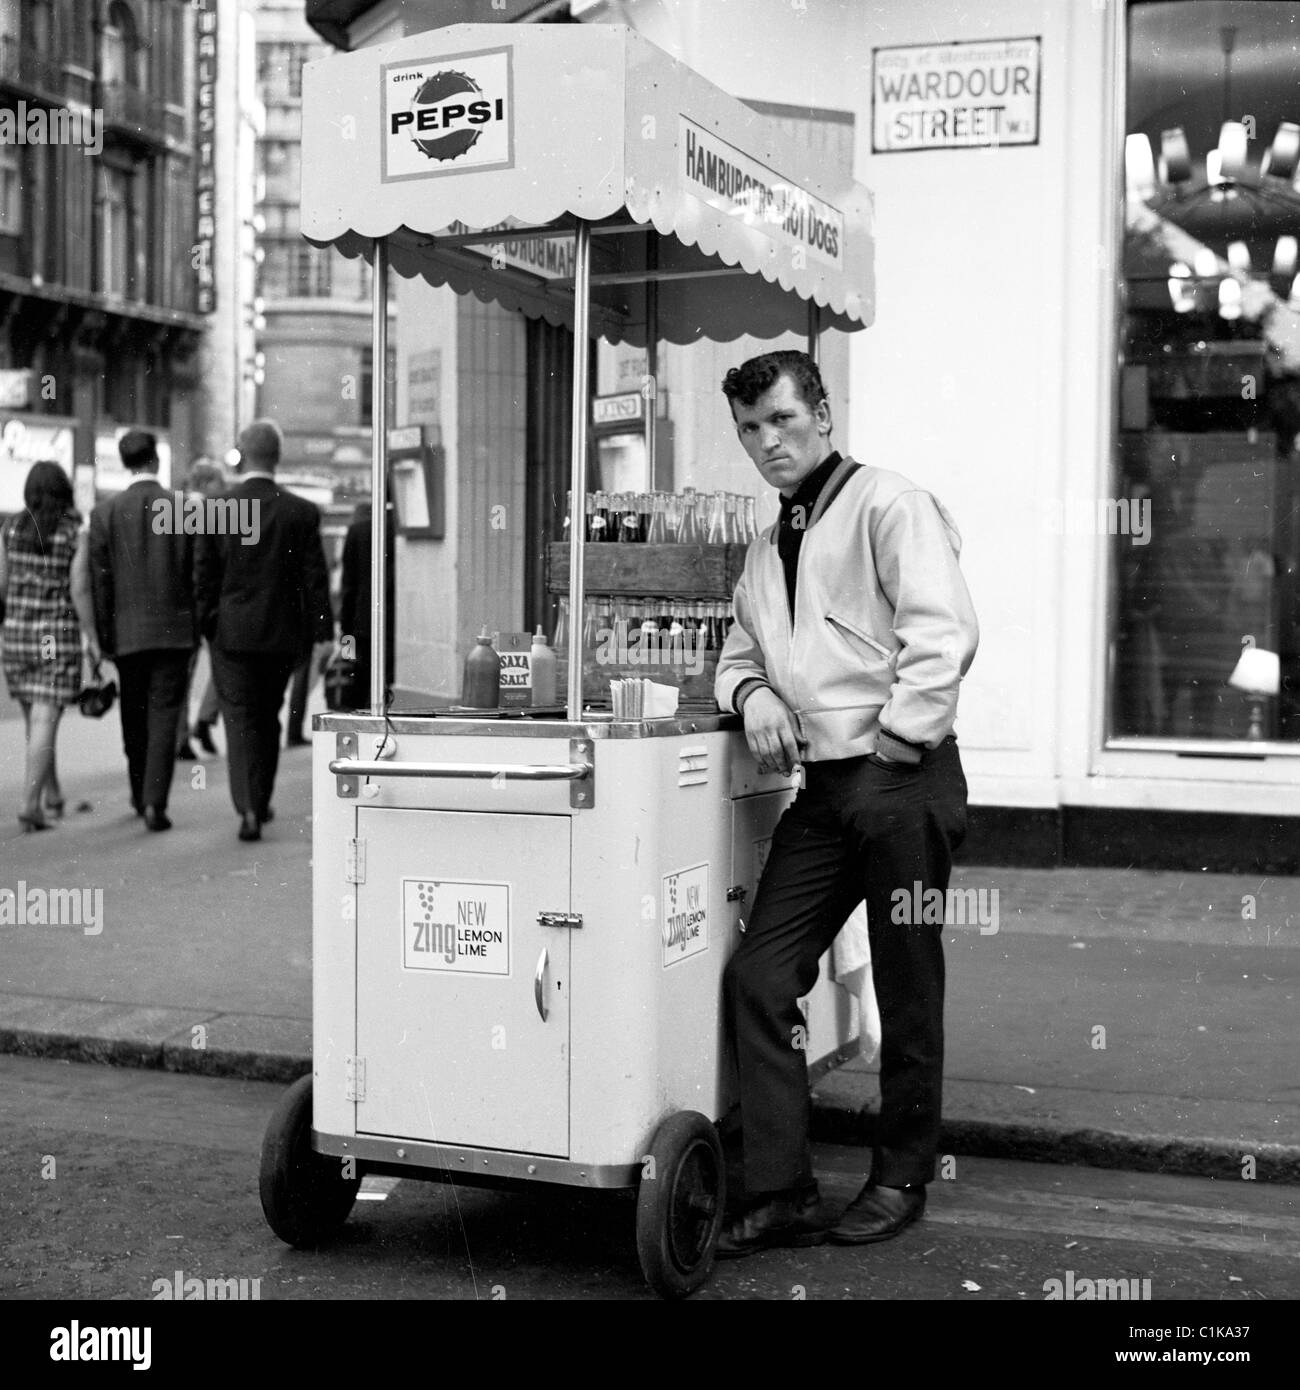 1960s, Londres. Stand portable pour hot dogs et vendeur masculin au coin de Wardour Street, dans cette photo historique de J Allan Cash. Banque D'Images